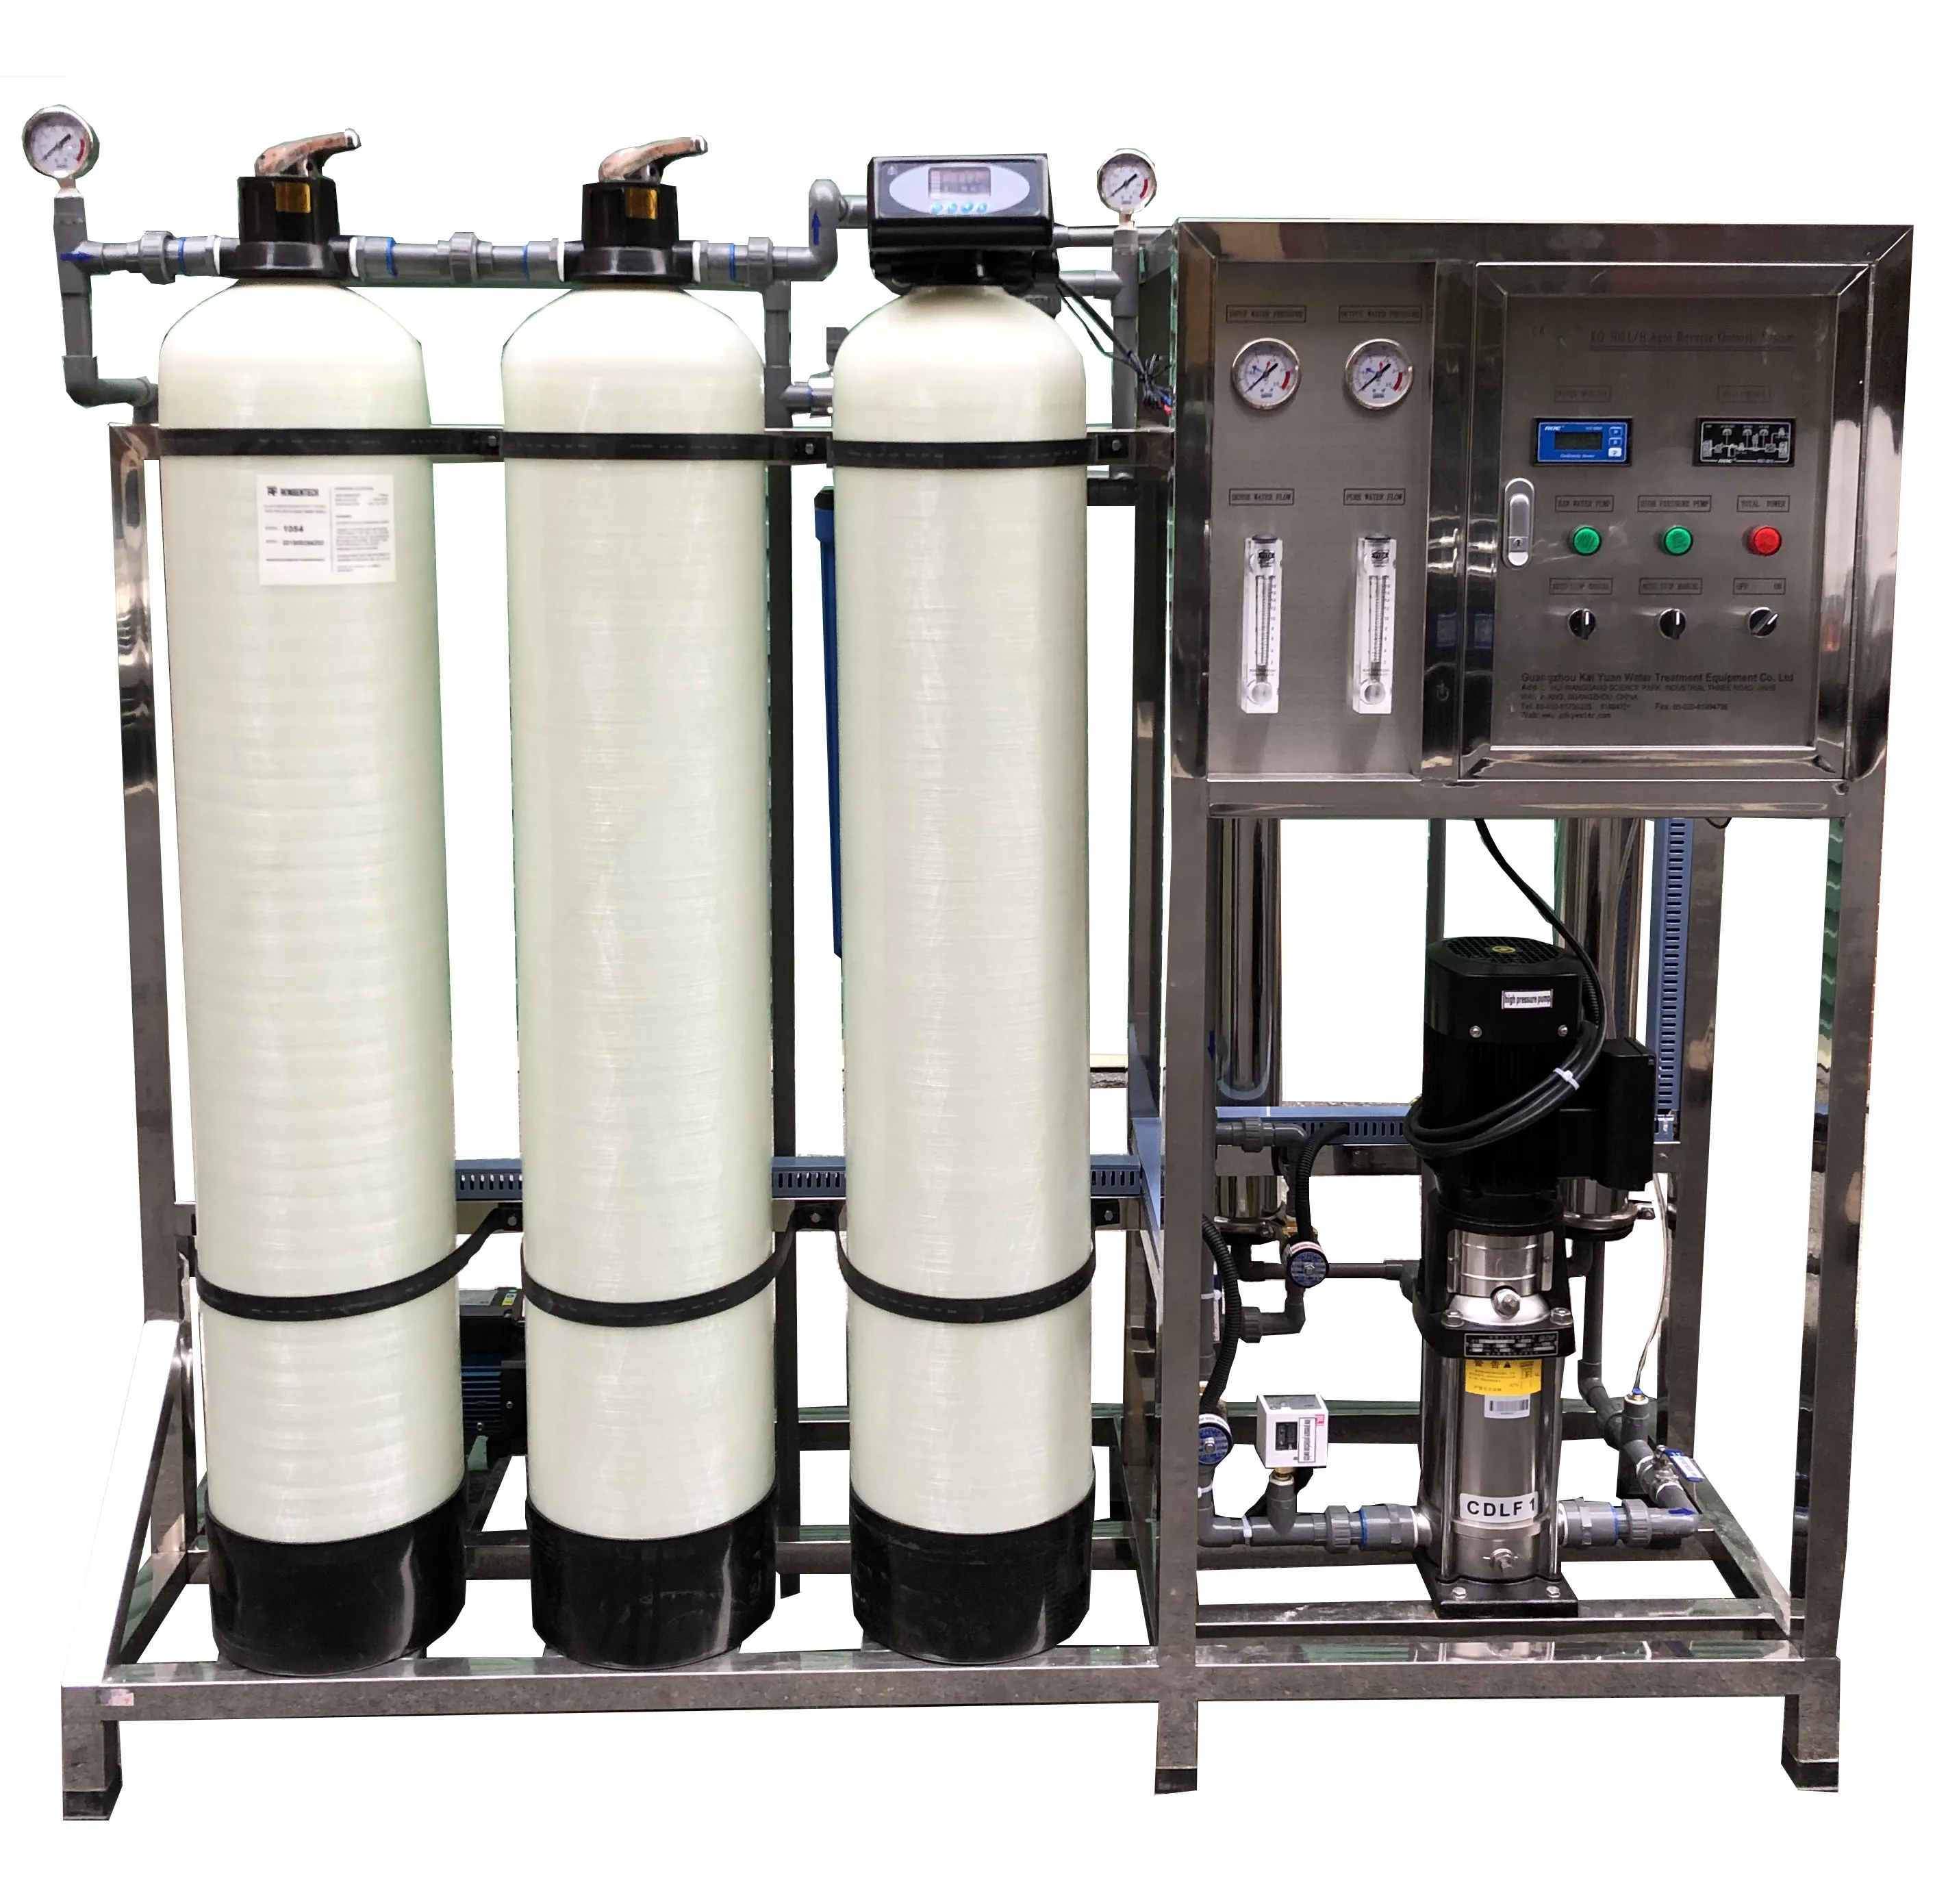 500lts/hr bir antiscalant dozaj pompası, karbon filtre ve su yumuşatıcı